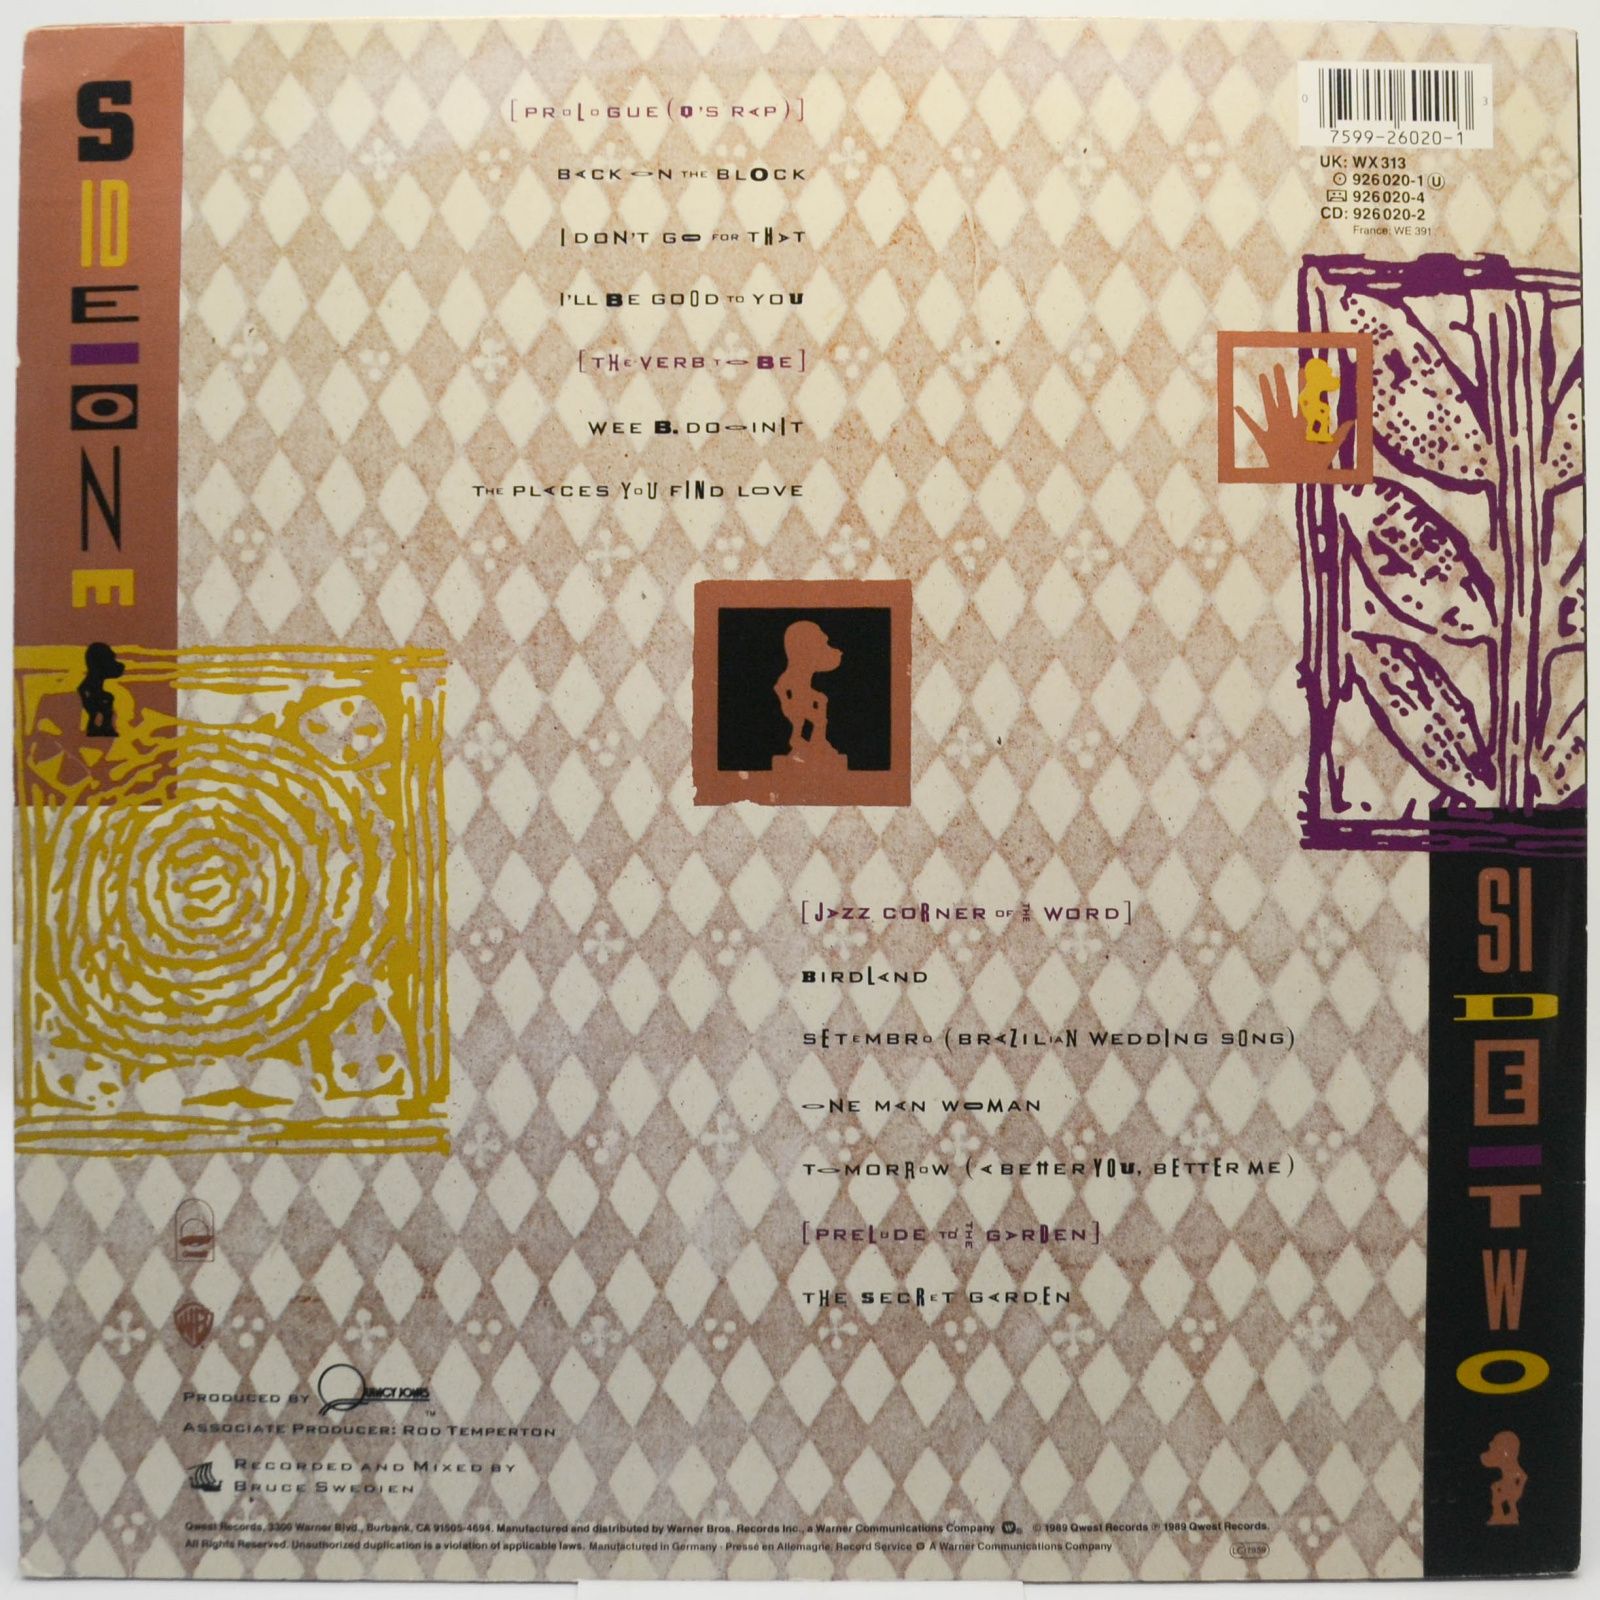 Quincy Jones — Back On The Block, 1989